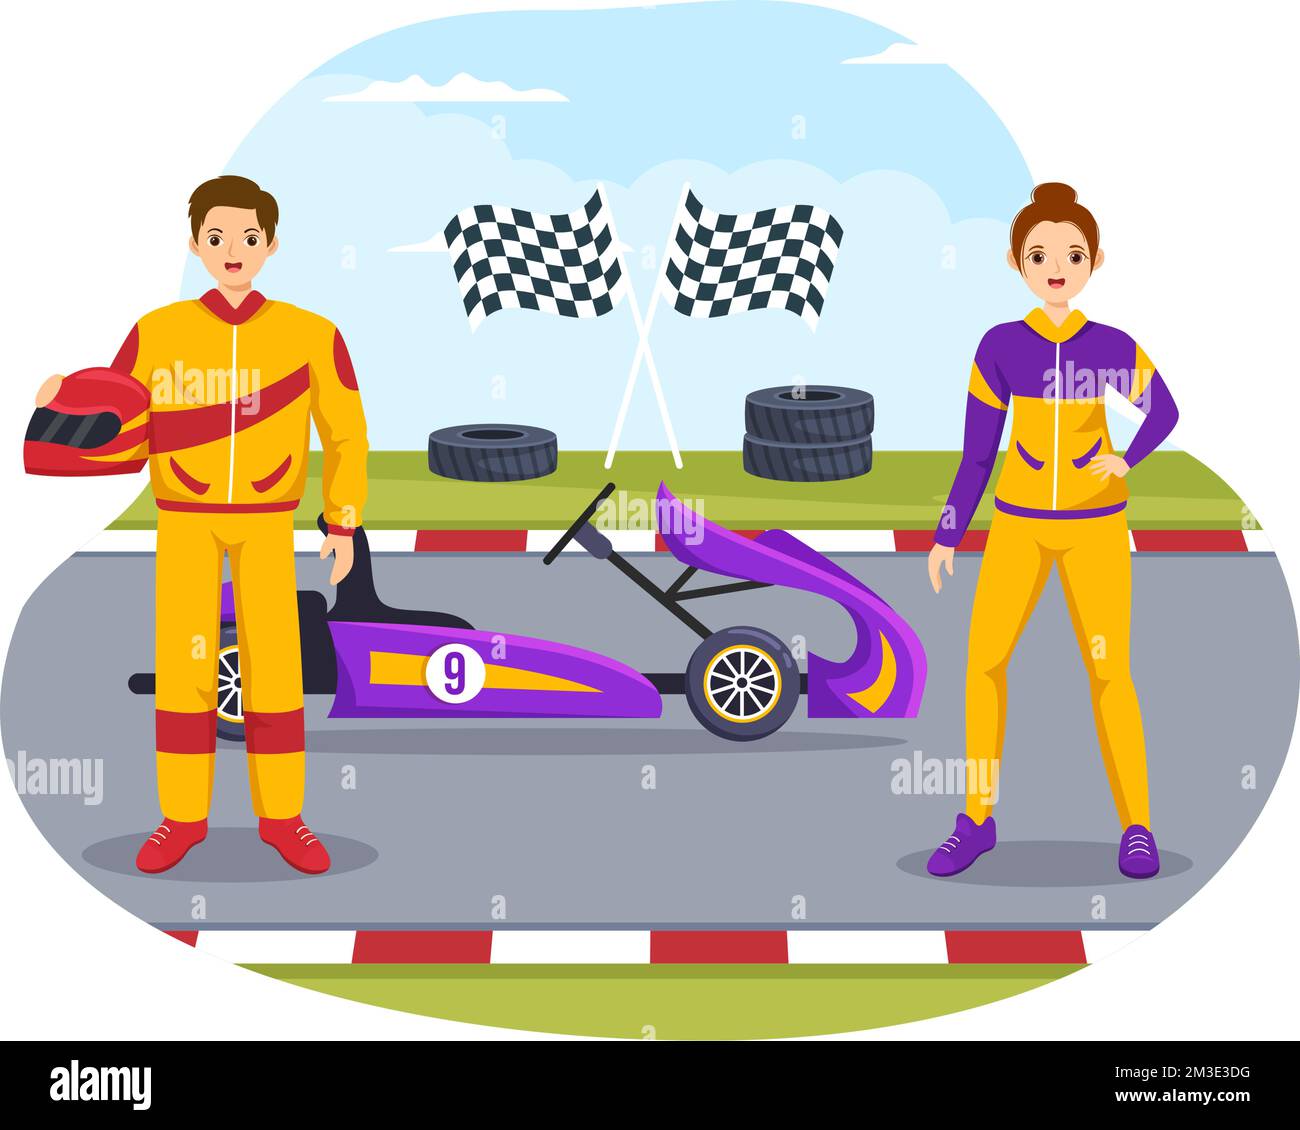 car-racing-motor-racing-track-racing-car-competitive-sport